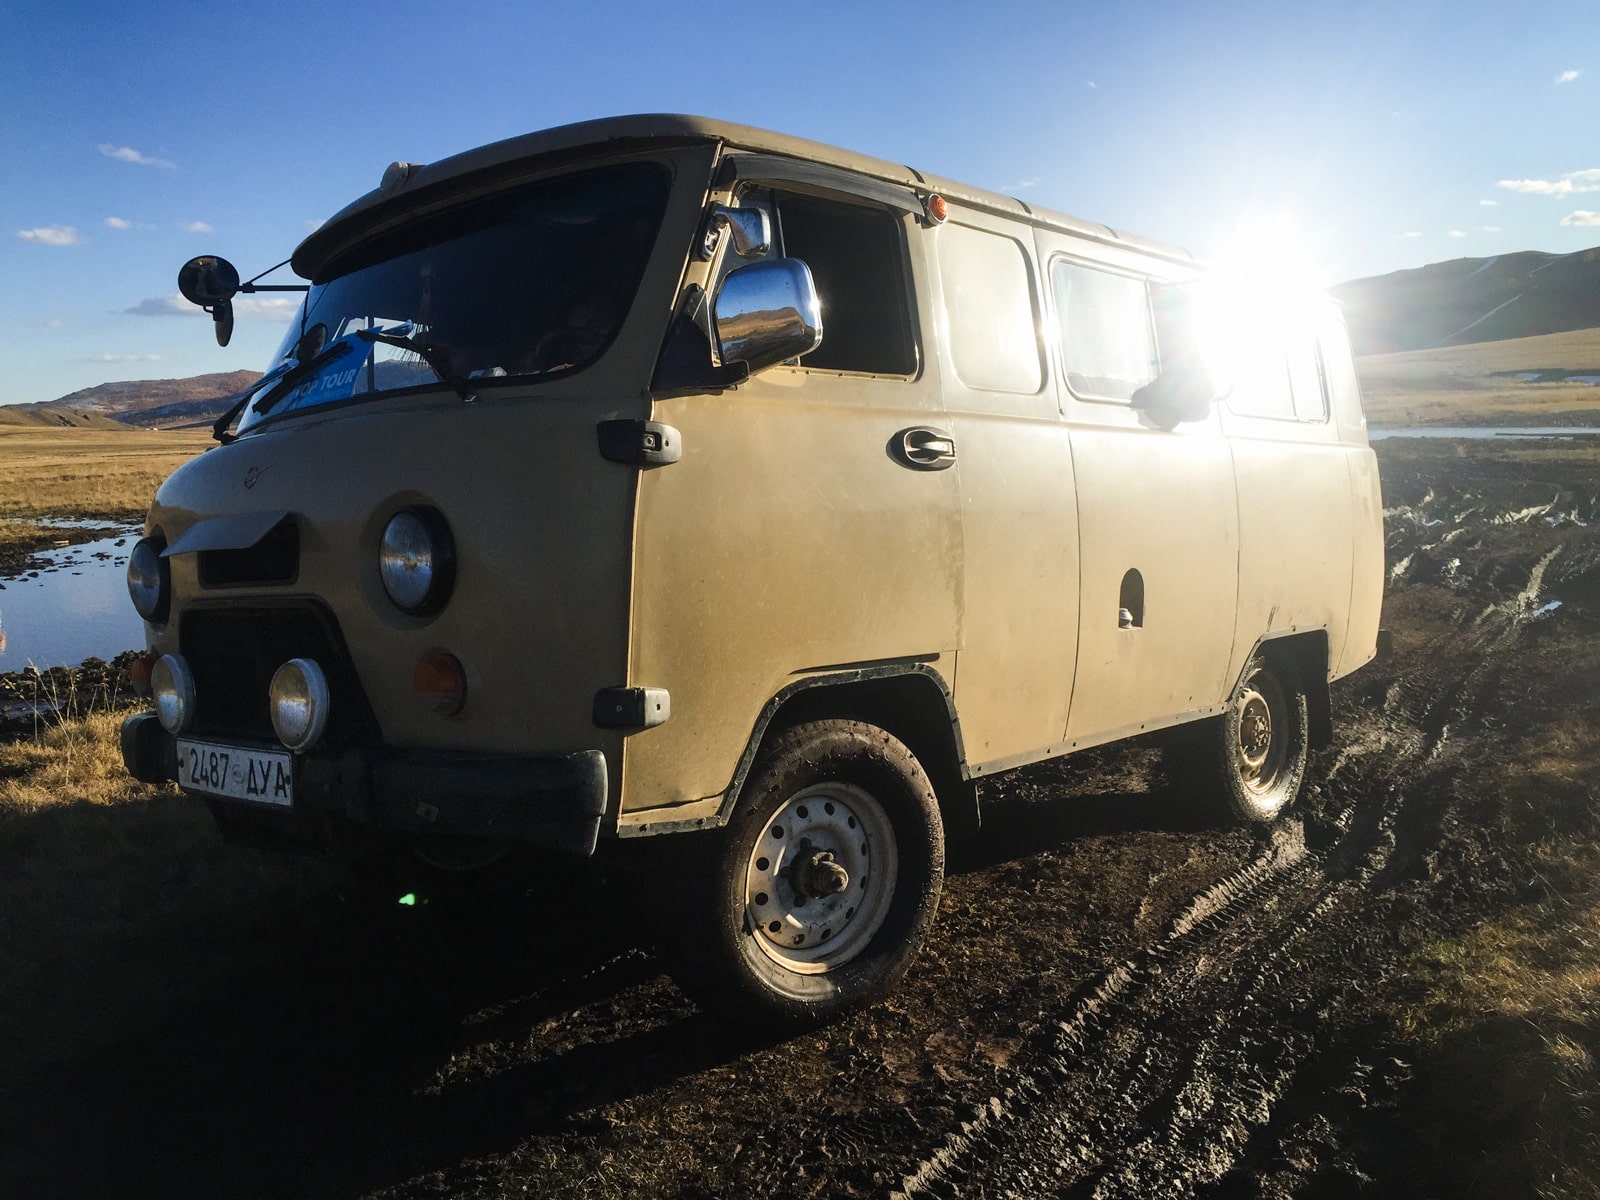 Tour van for driving in the Gobi Desert